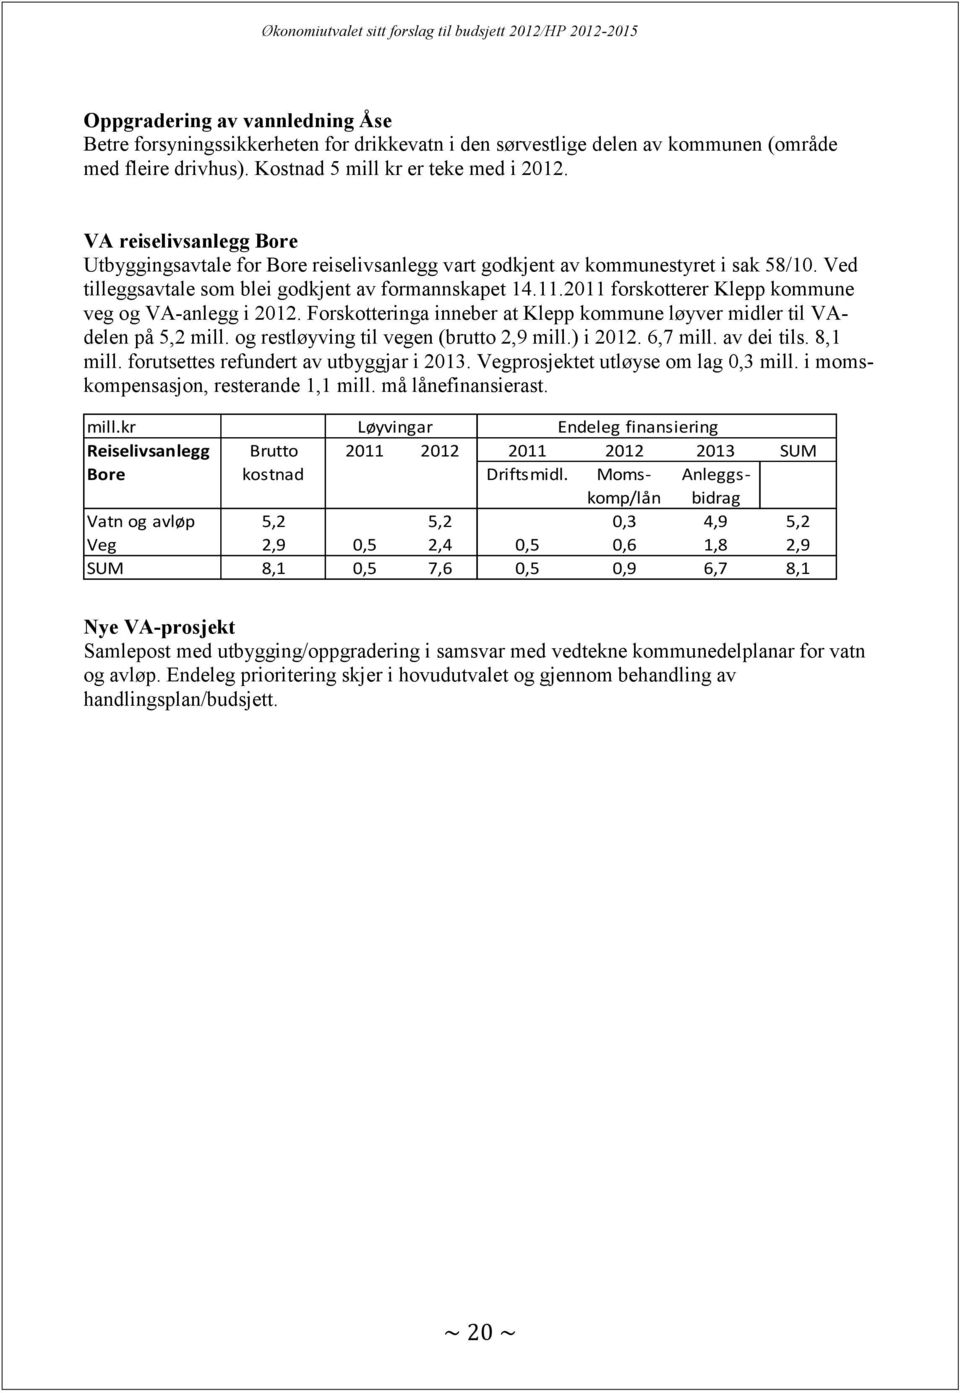 2011 forskotterer Klepp kommune veg og VA-anlegg i 2012. Forskotteringa inneber at Klepp kommune løyver midler til VAdelen på 5,2 mill. og restløyving til vegen (brutto 2,9 mill.) i 2012. 6,7 mill.